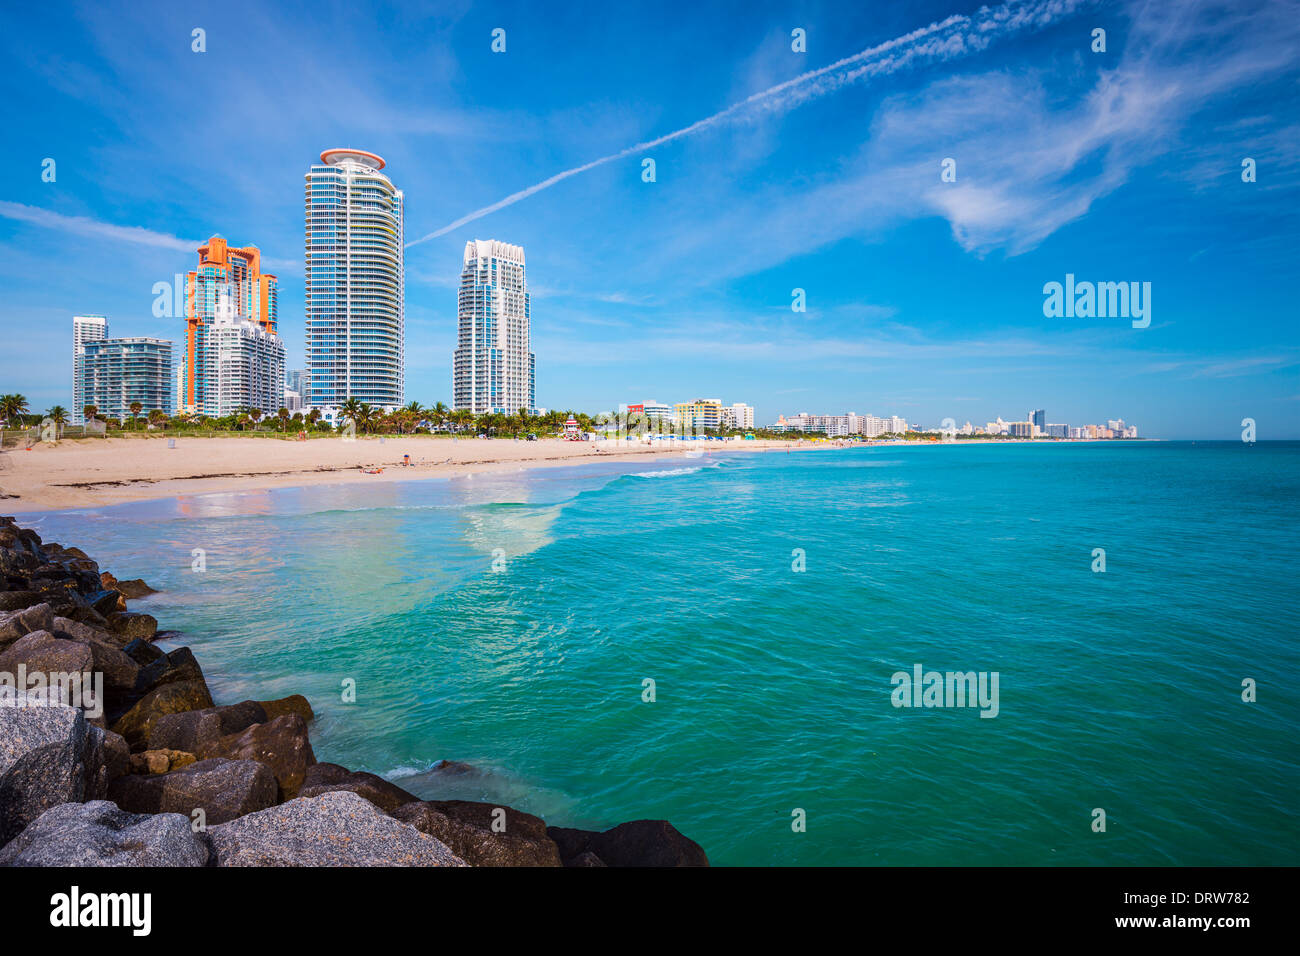 Miami, Florida at South Beach. Stock Photo